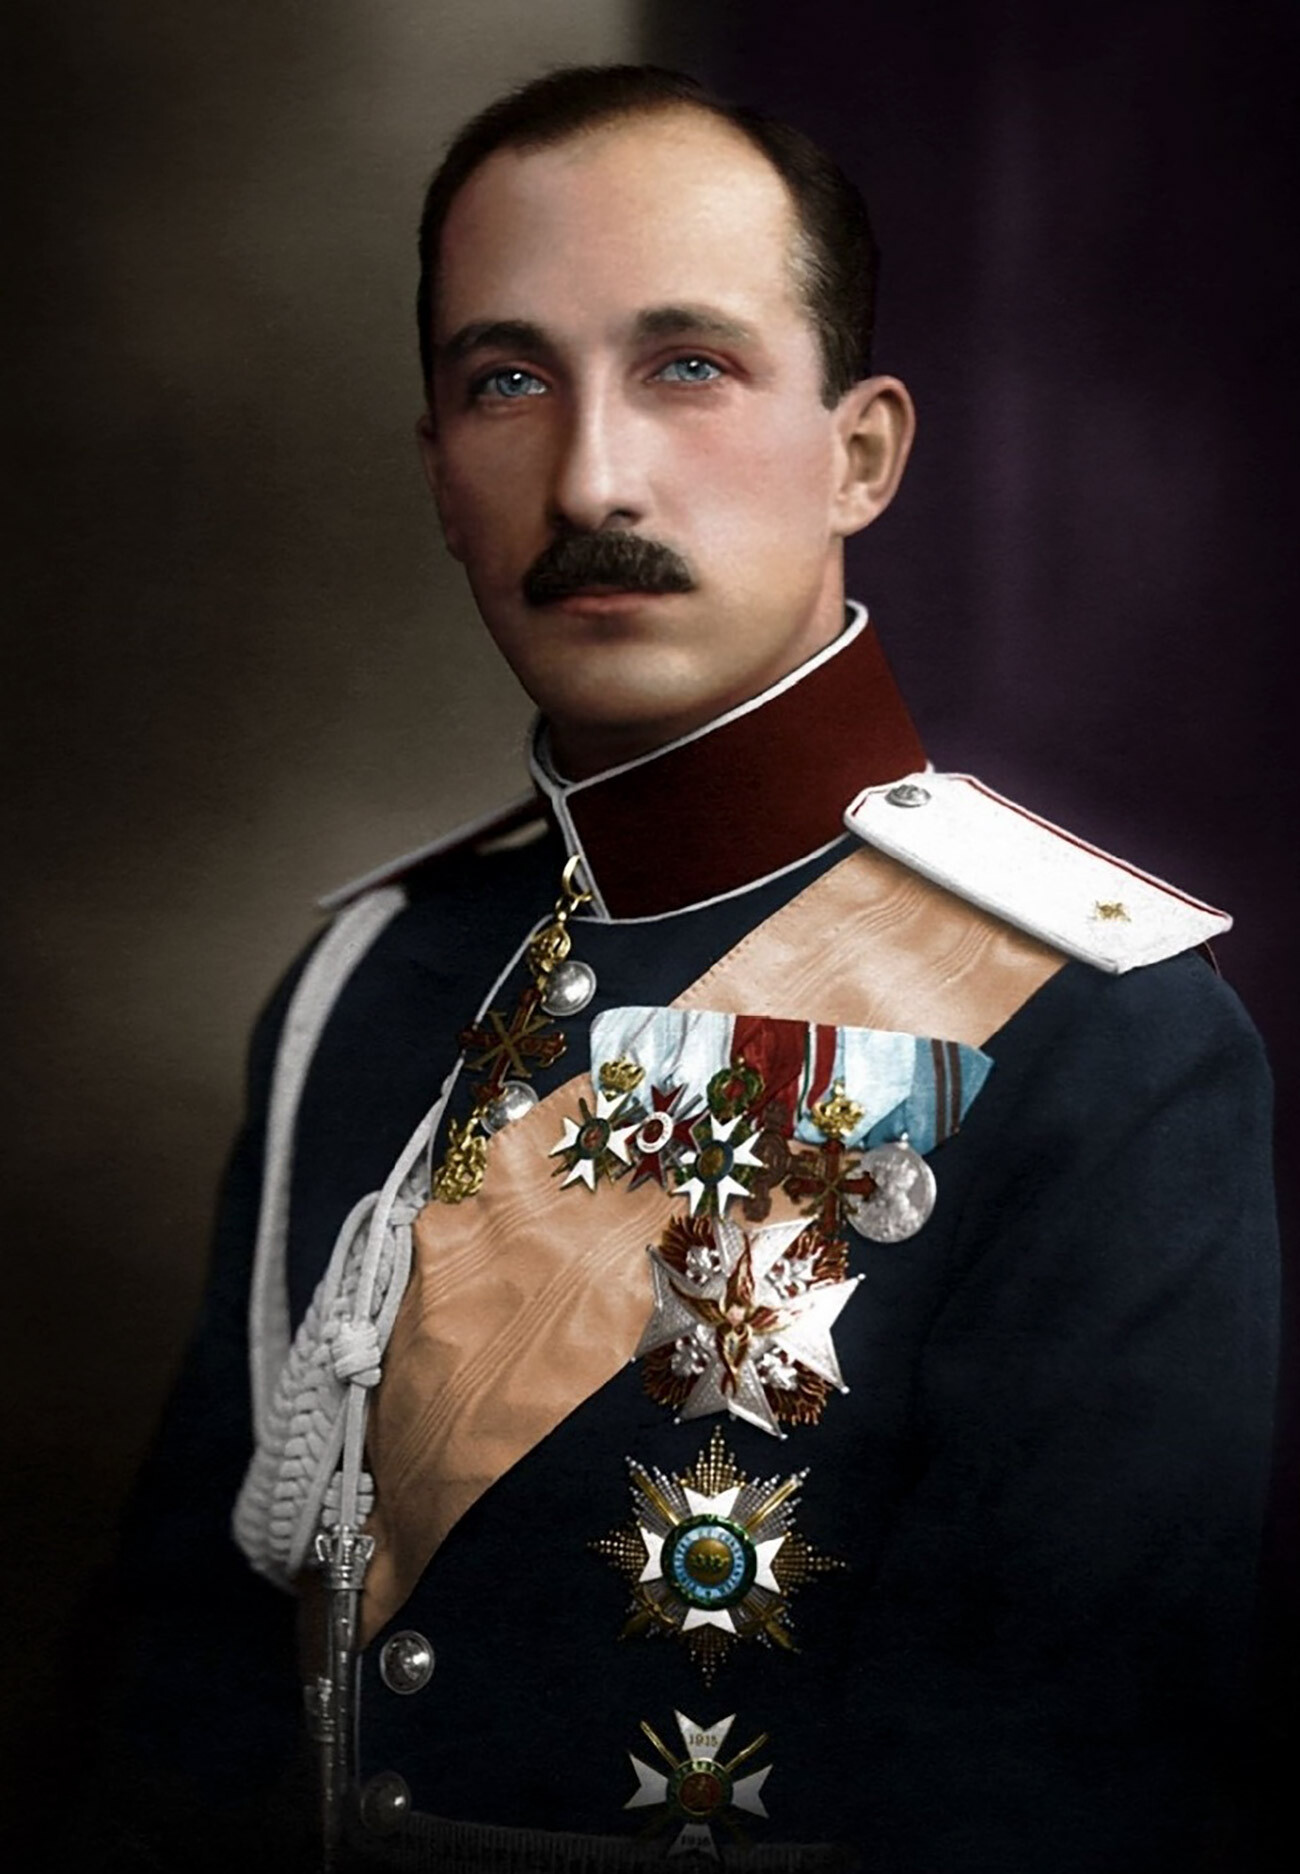 Boris III, zar di Bulgaria dal 3 ottobre 1918 fino alla morte, avvenuta il 28 agosto 1943, subito dopo un incontro con Hitler e in circostanze molto misteriose che fecero sospettare l’avvelenamento